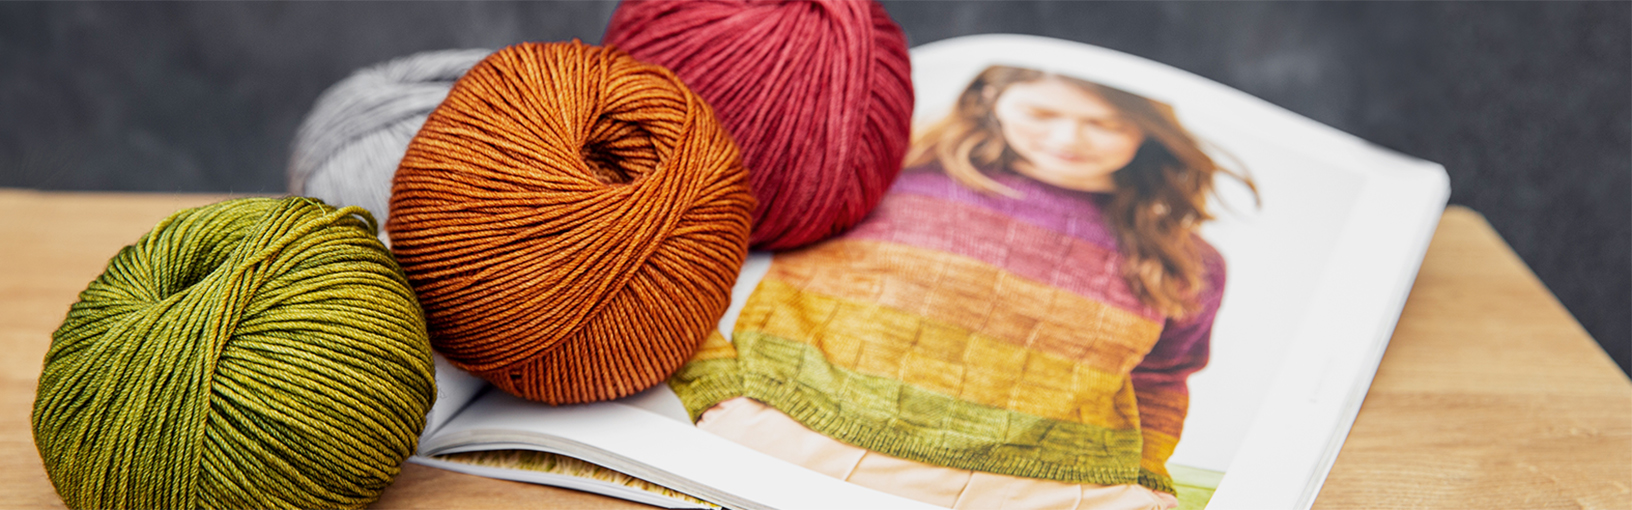 Visokokvalitetne pređe za pletenje, kukičanje i filc Lana Grossa Vune | PROLEĆE / LETO